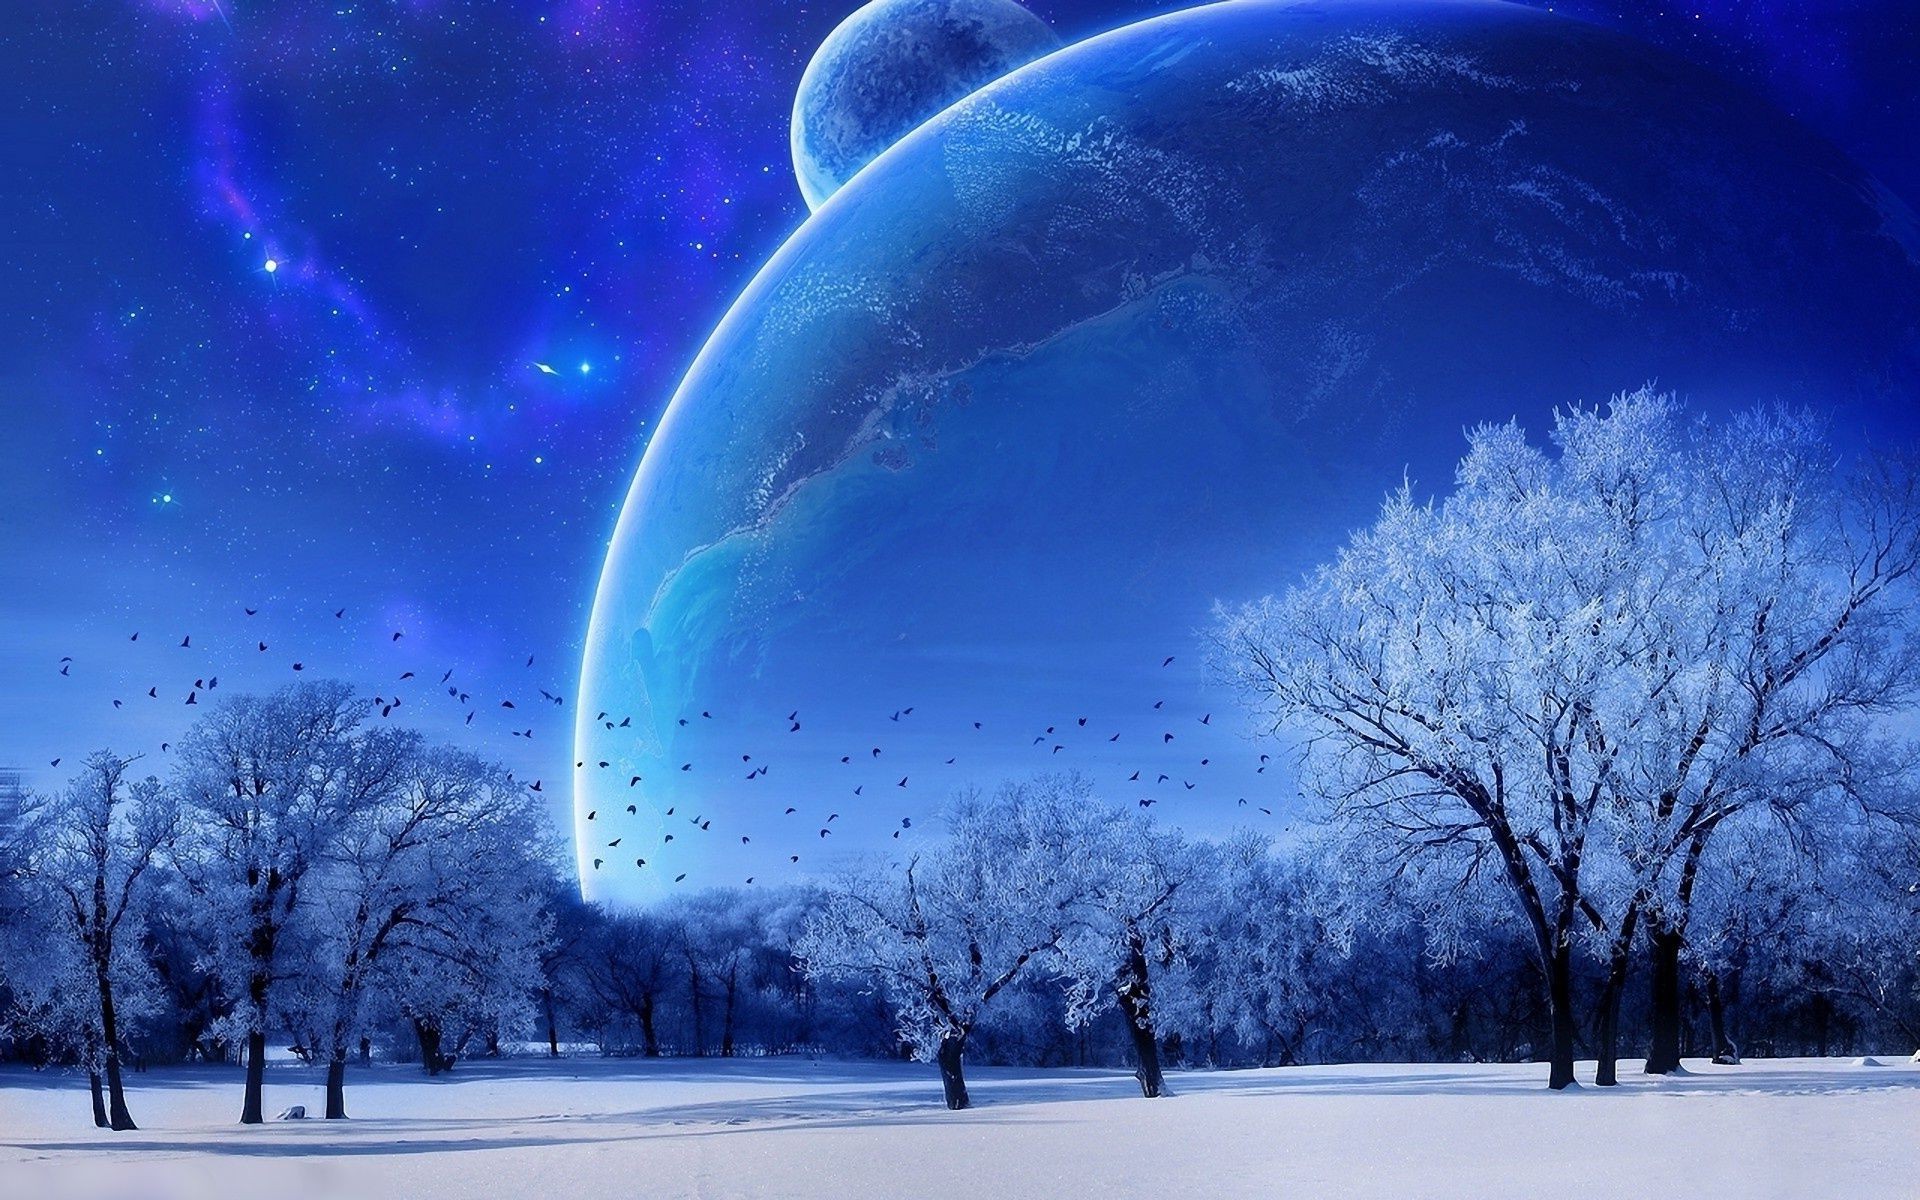 космос зима снег погода пейзаж холодная природа дерево свет небо яркий